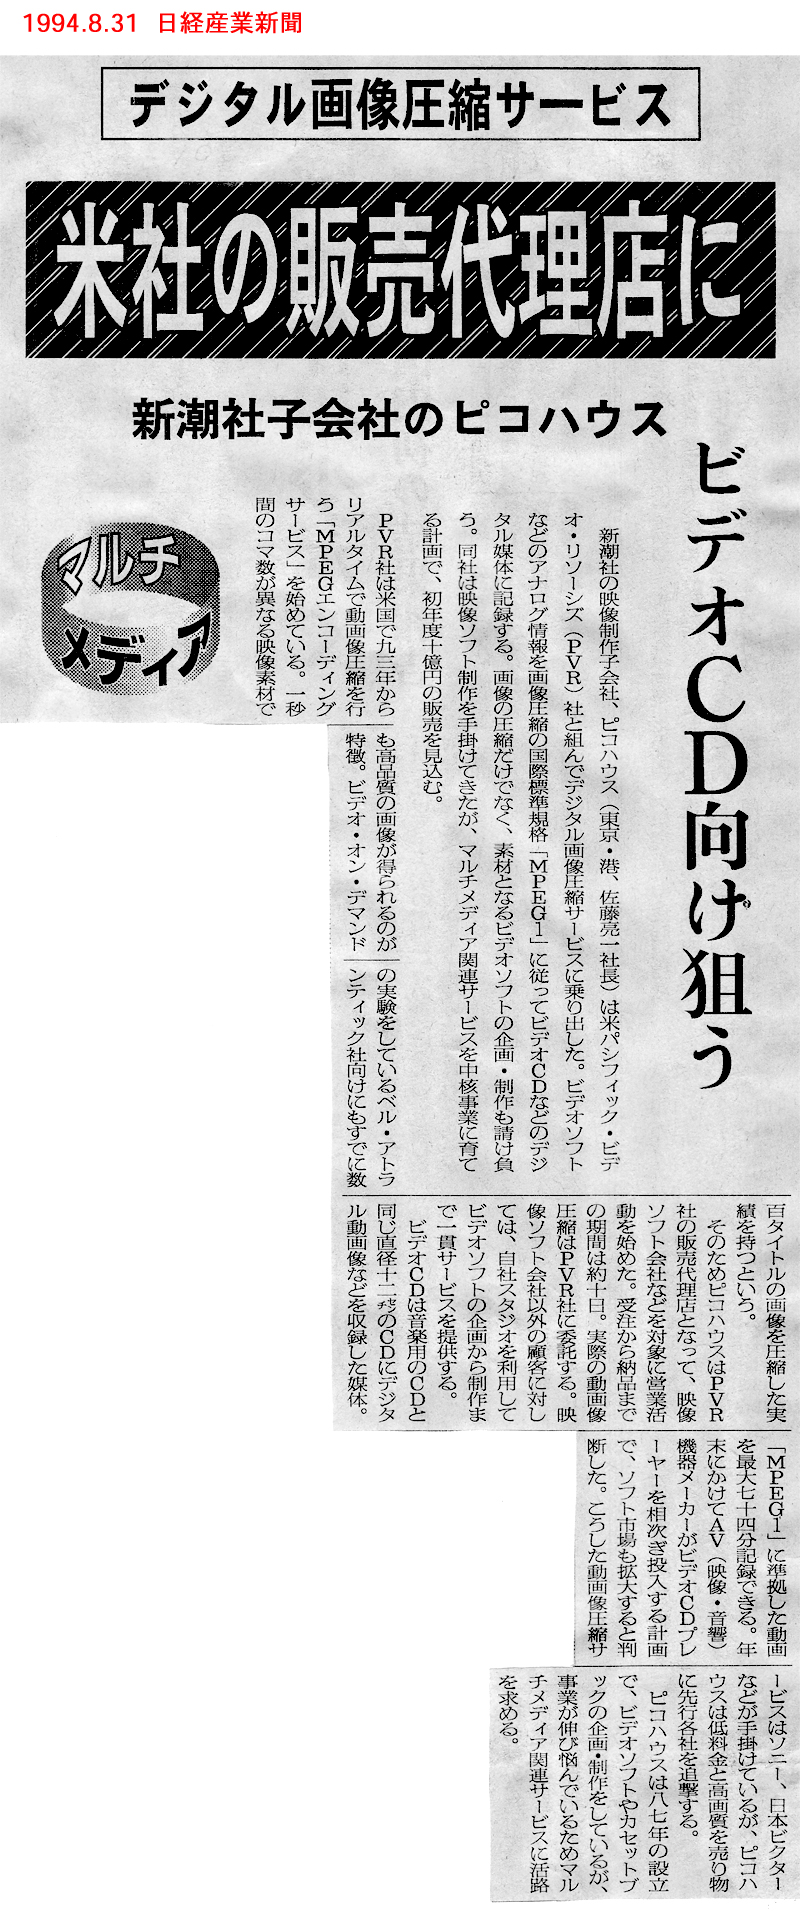 1994.8.31 日経産業新聞